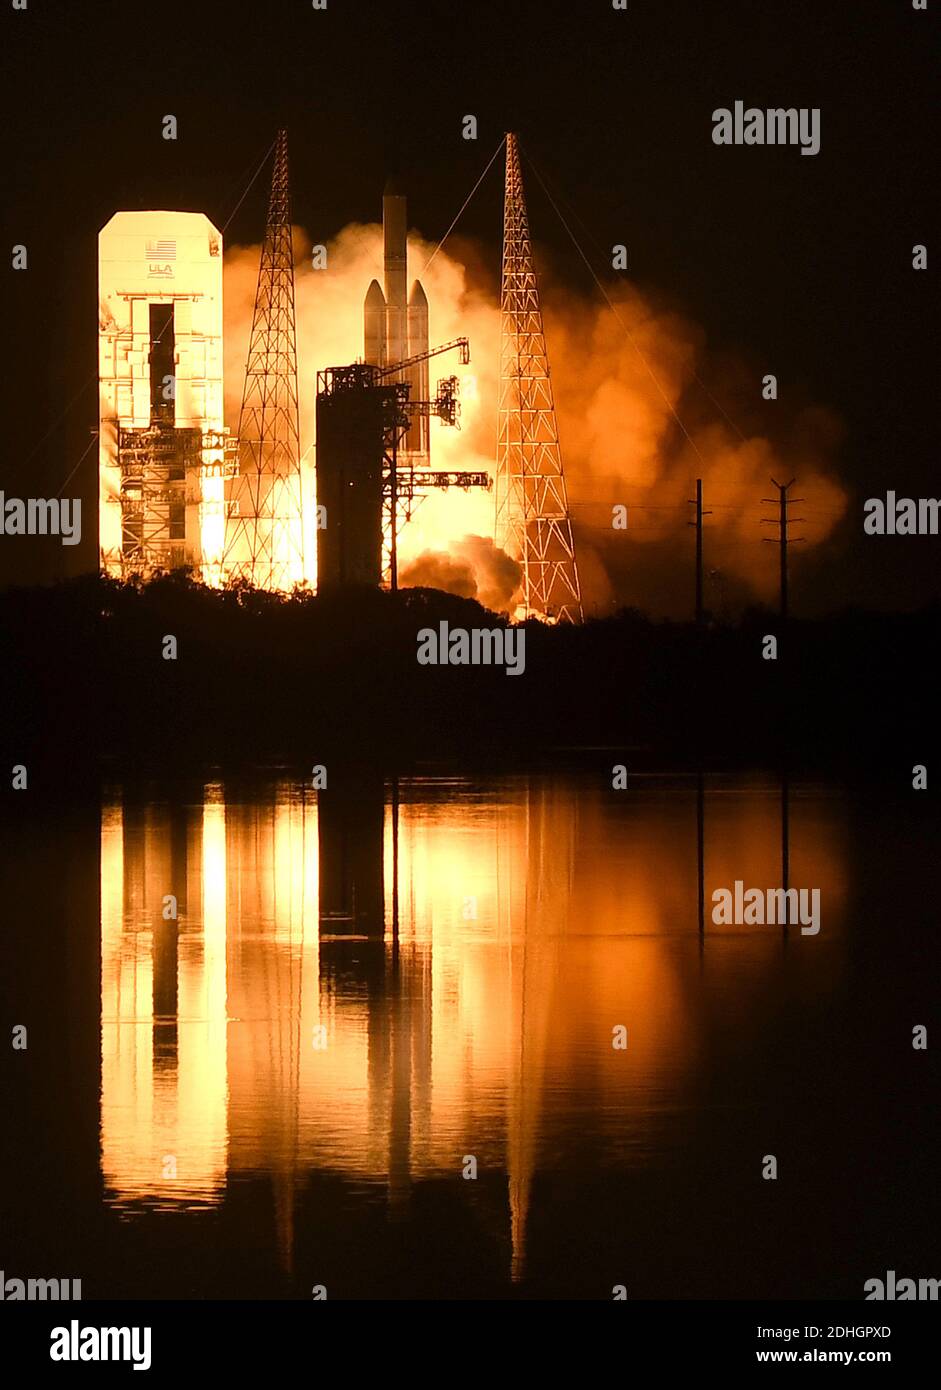 10 de diciembre de 2020 - Cabo Cañaveral, Florida, Estados Unidos - UN cohete Delta IV-Heavy de la Alianza de lanzamiento Unido lanza desde el PAD 37B en la Estación de la Fuerza Aérea de Cabo Cañaveral el 10 de diciembre de 2020 en Cabo Cañaveral, Florida. El cohete lleva un satélite espía clasificado para la Oficina Nacional de reconocimiento. (Paul Hennessy/Alamy) Foto de stock